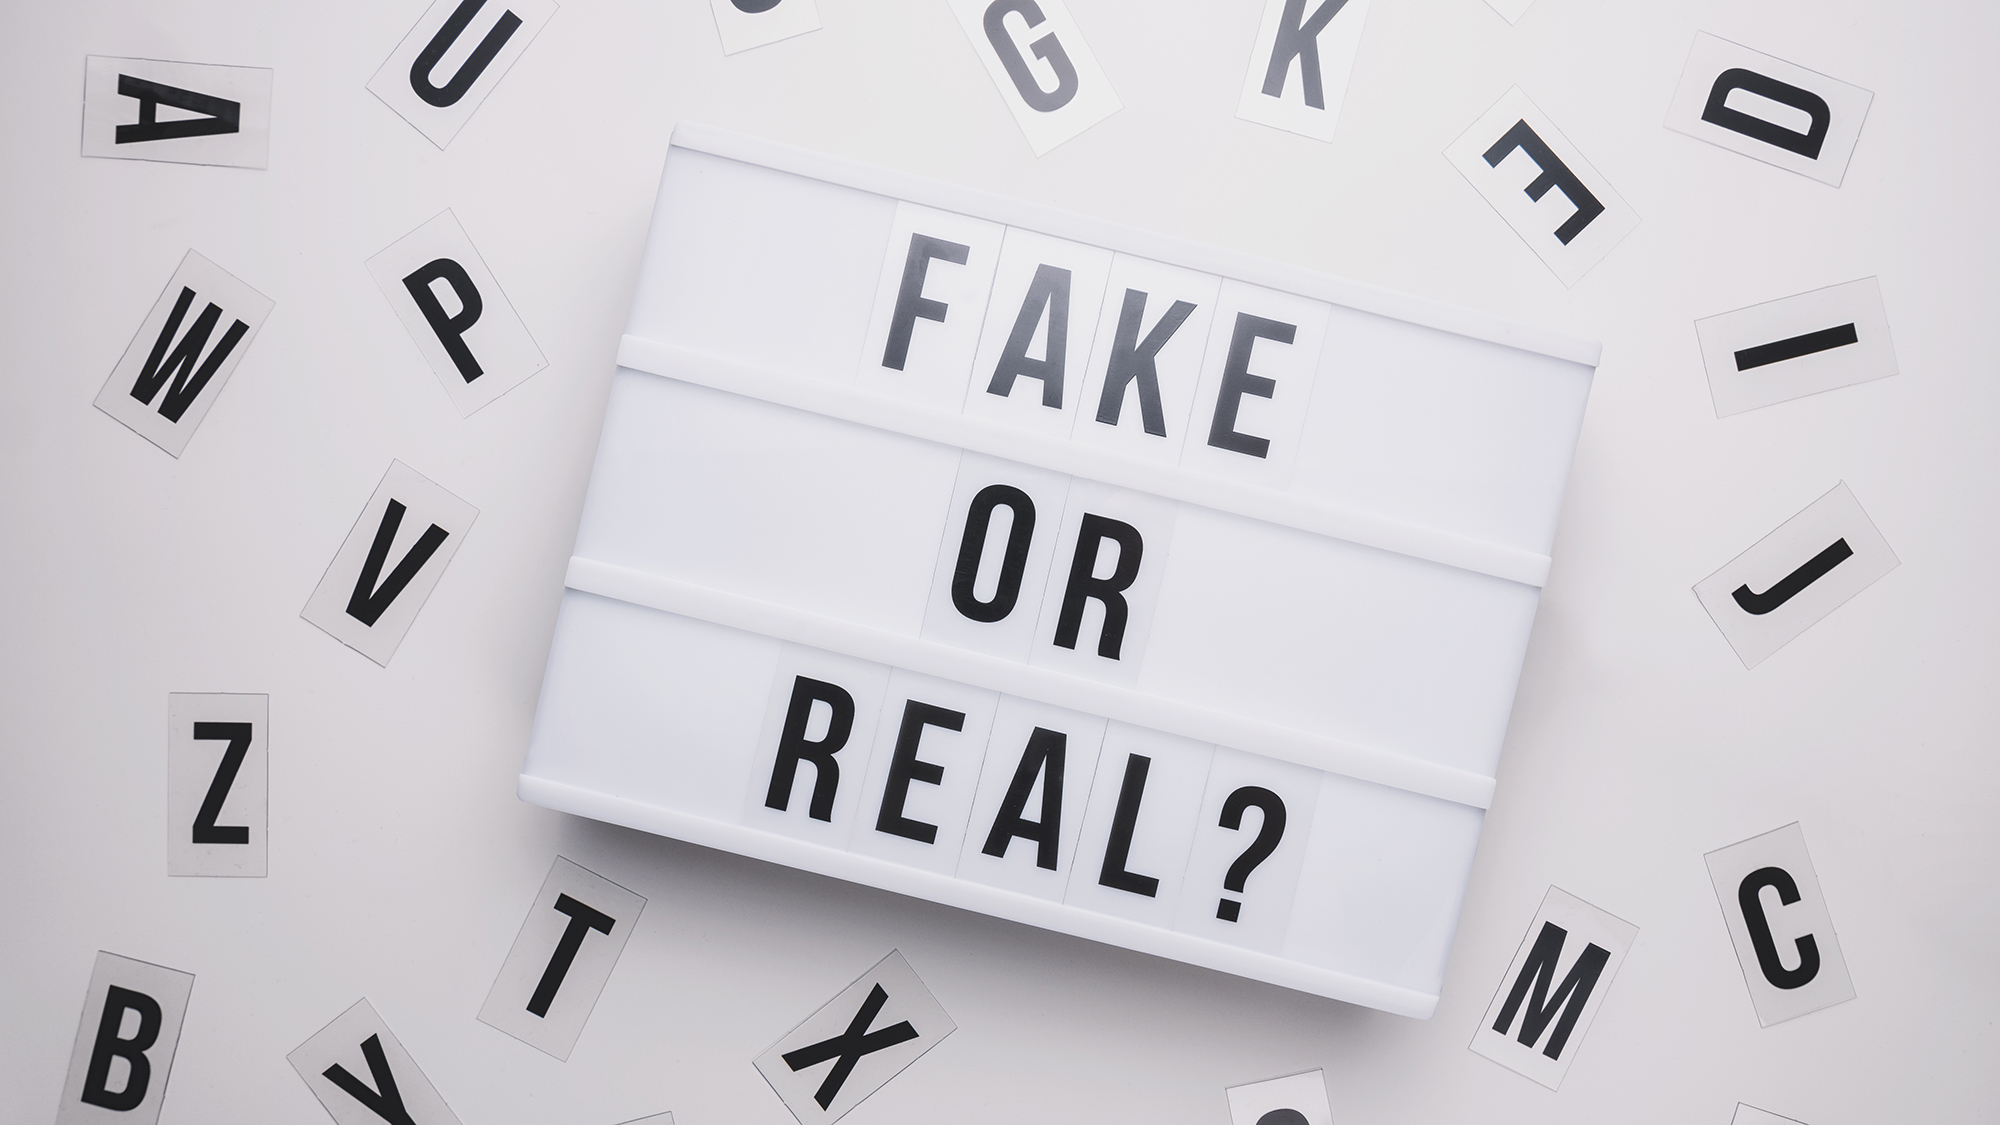 Schild mit der Frage "Fake or real"?